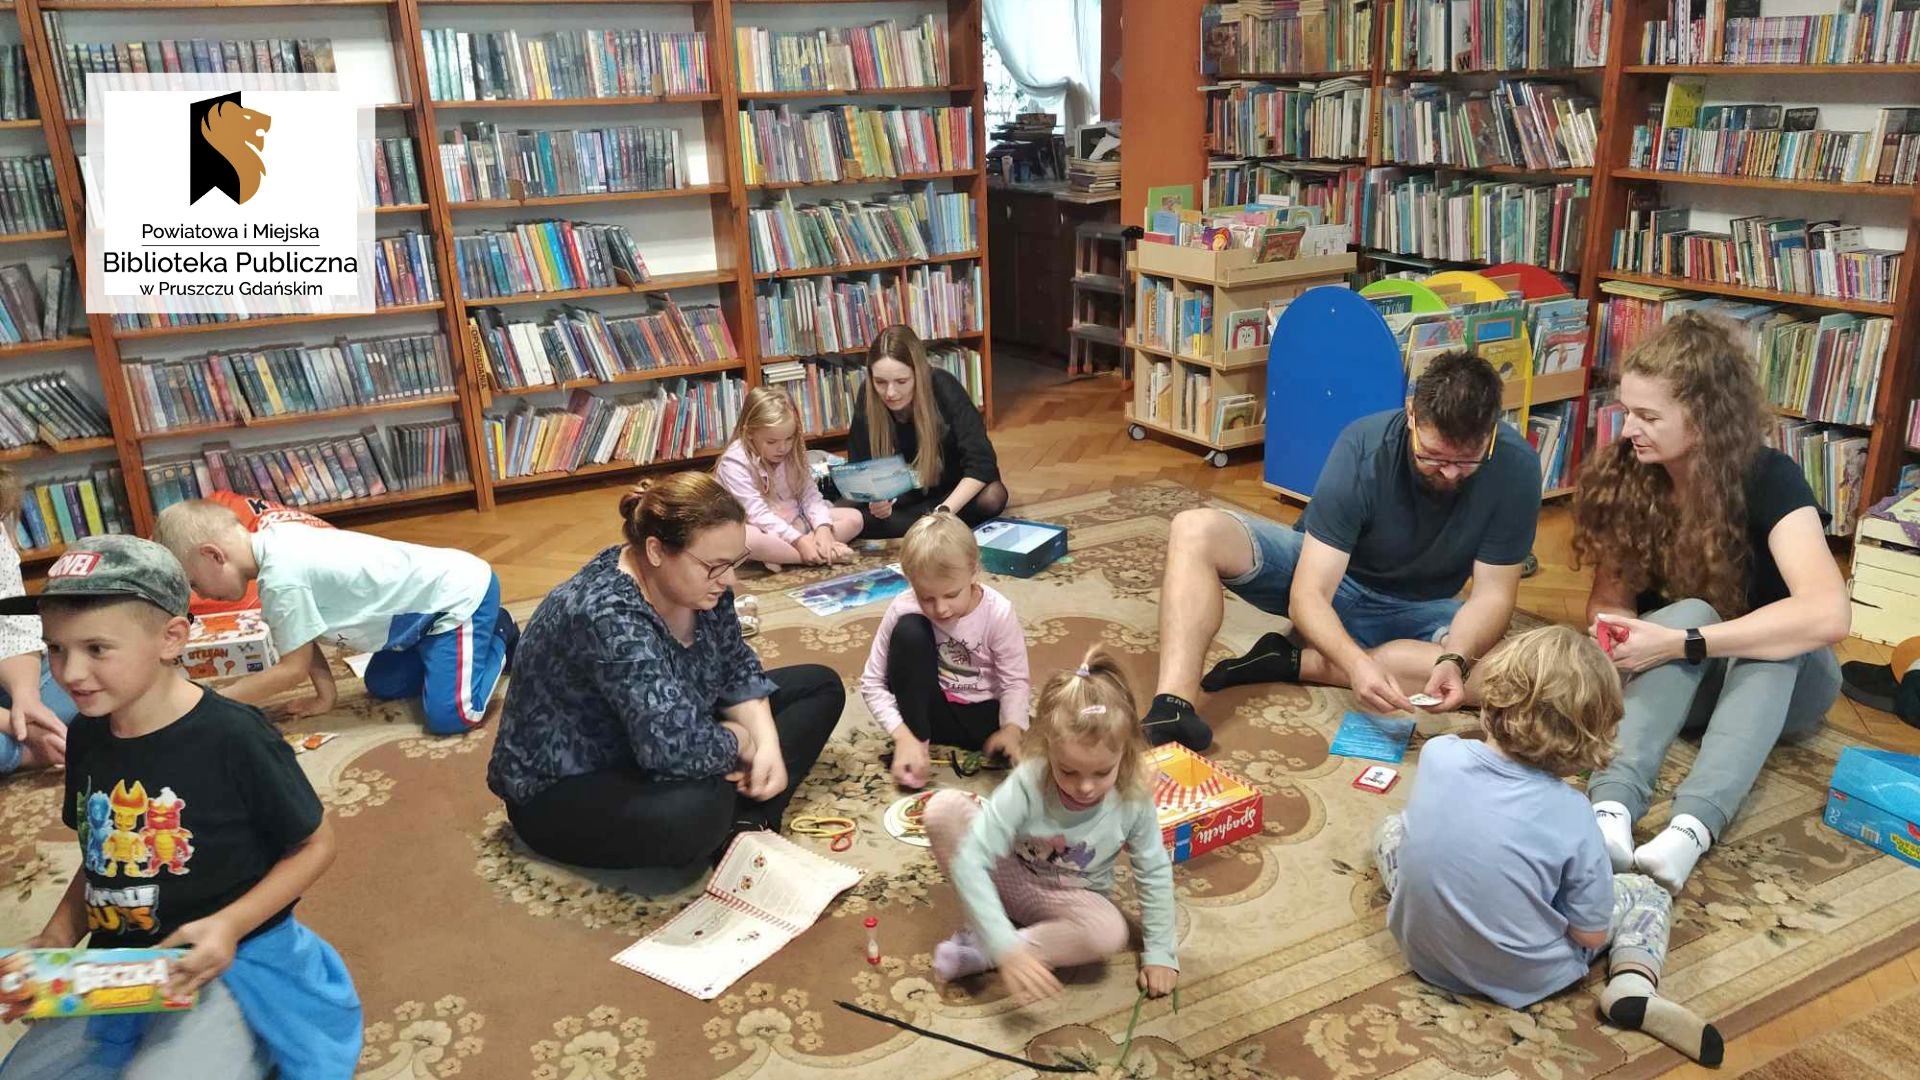 Dzieci i dorośli siedzą na podłodze. Przed nimi leżą różne gry. W tle regały z książkami.